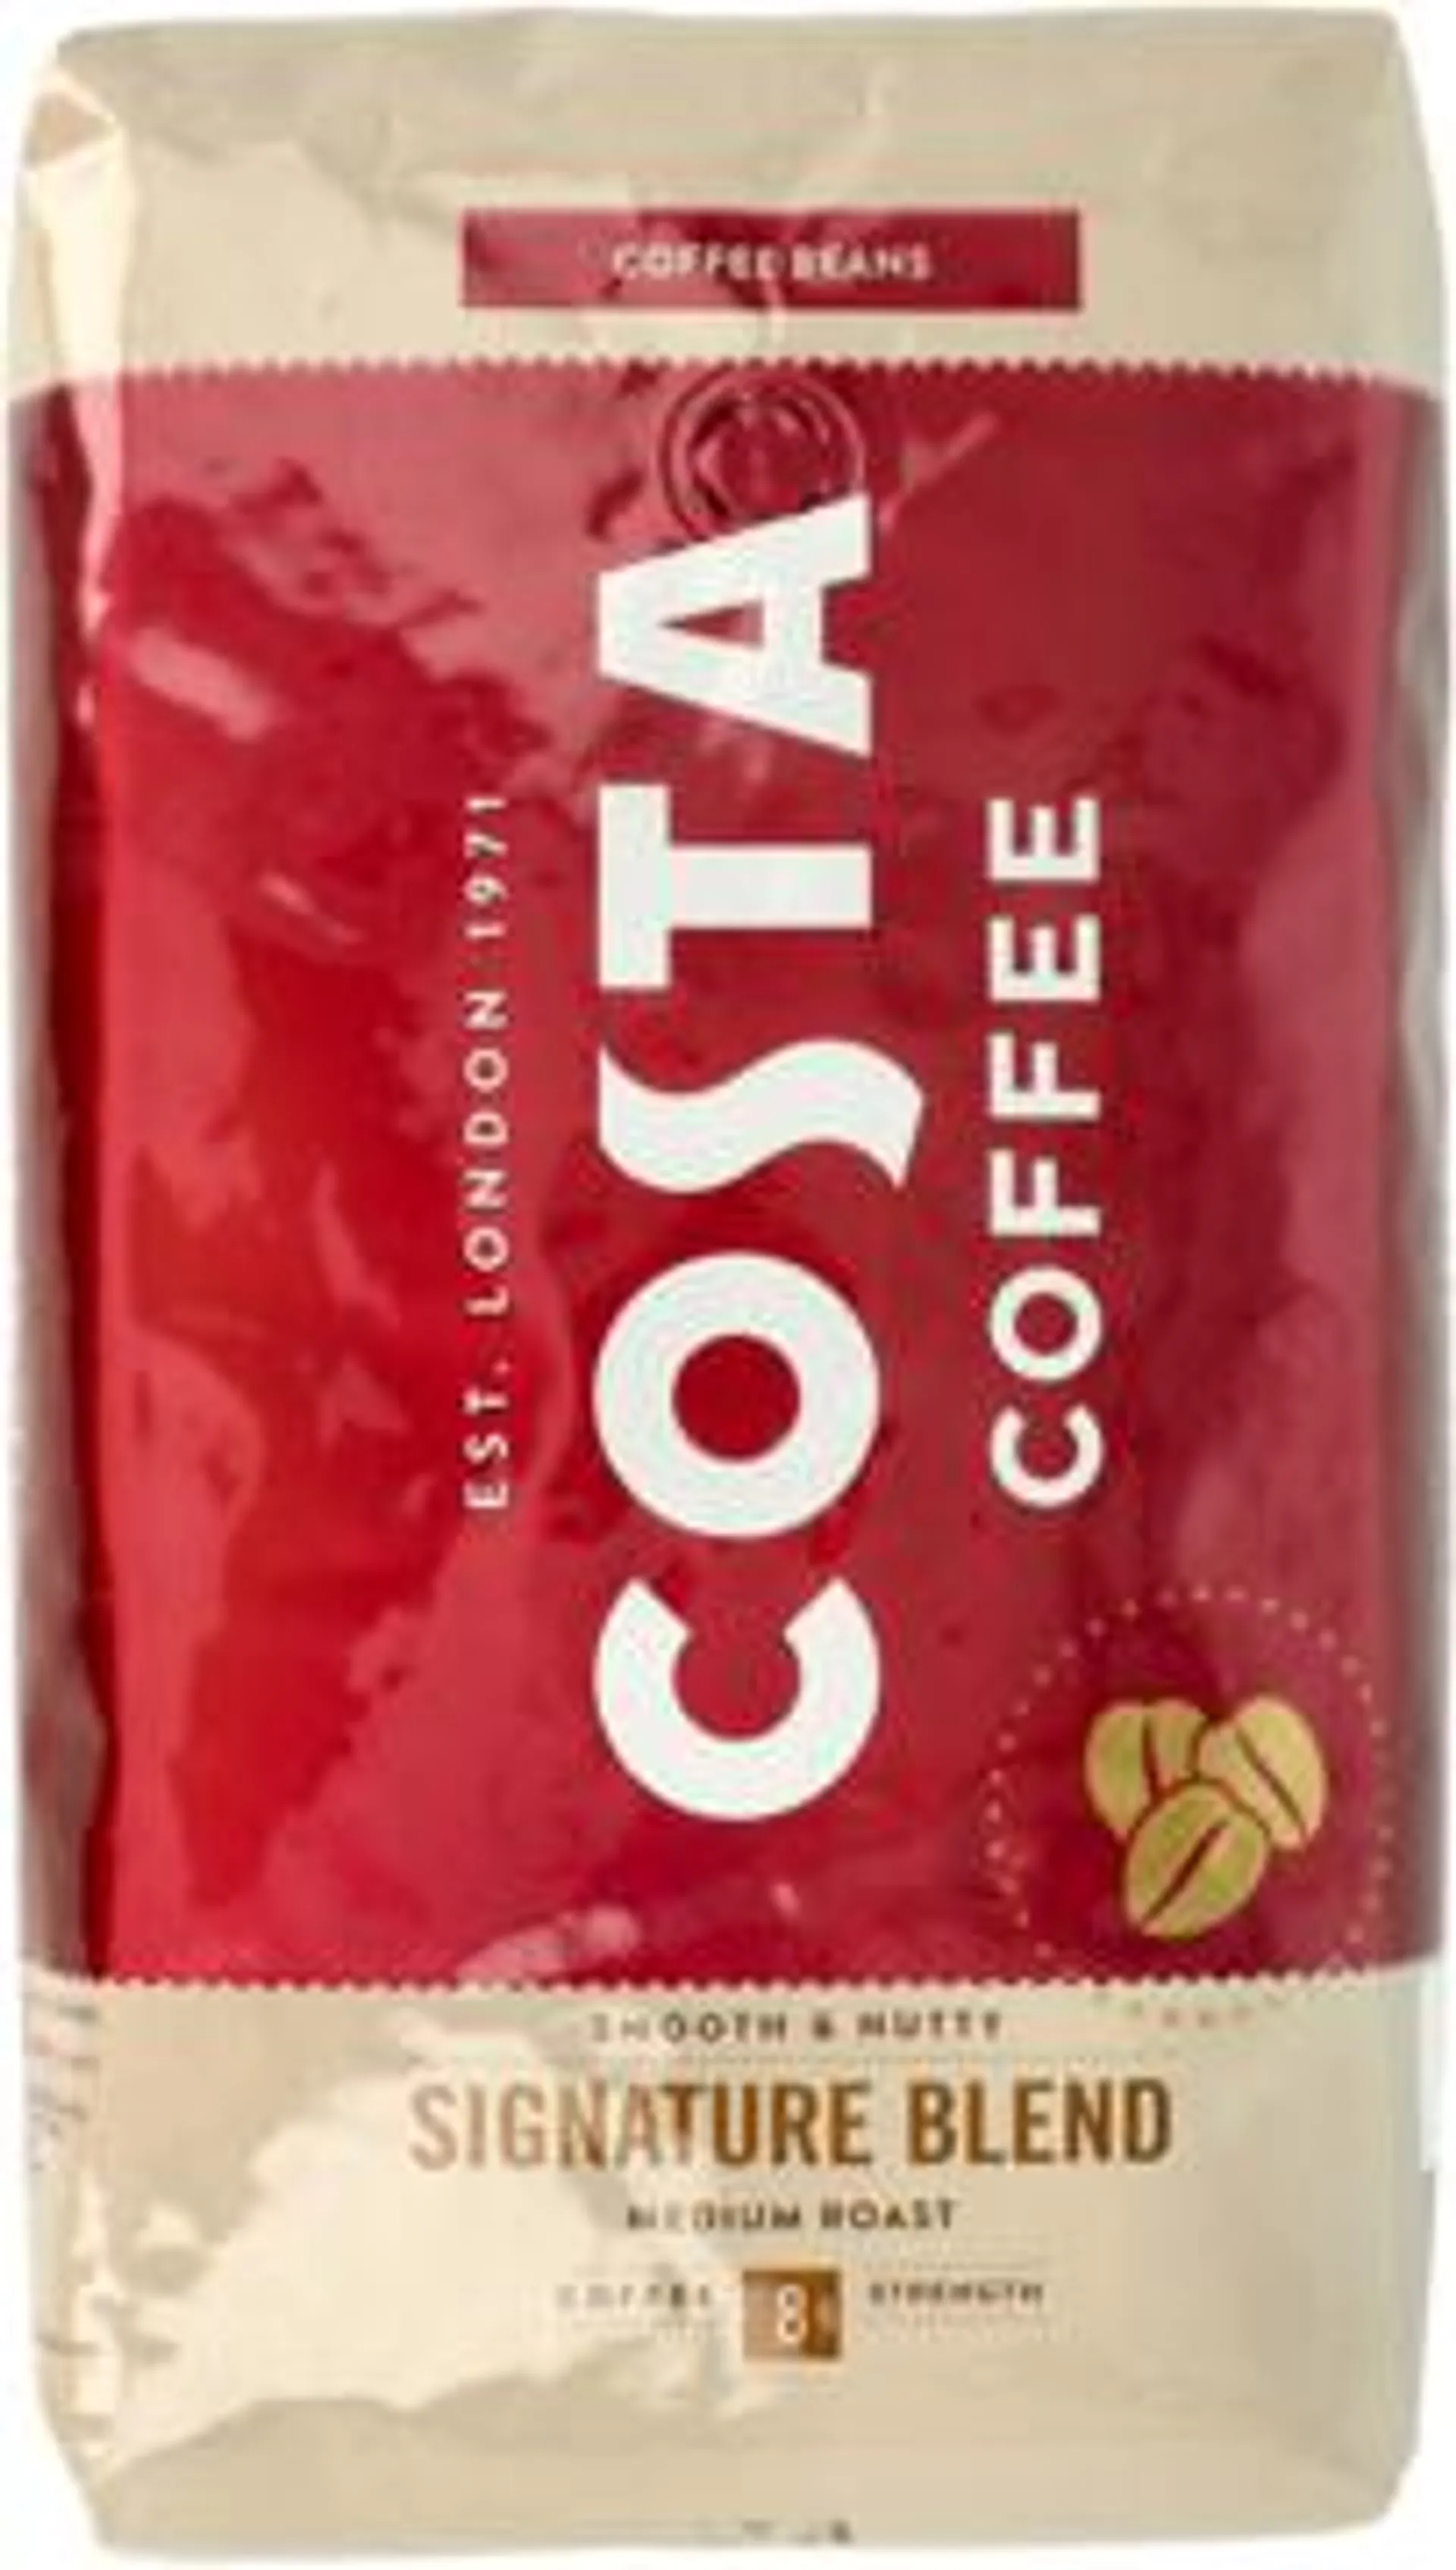 COSTA COFFEE Signature Blend kawa ziarnista, Medium Roast 1 kg, nr kat. 370941